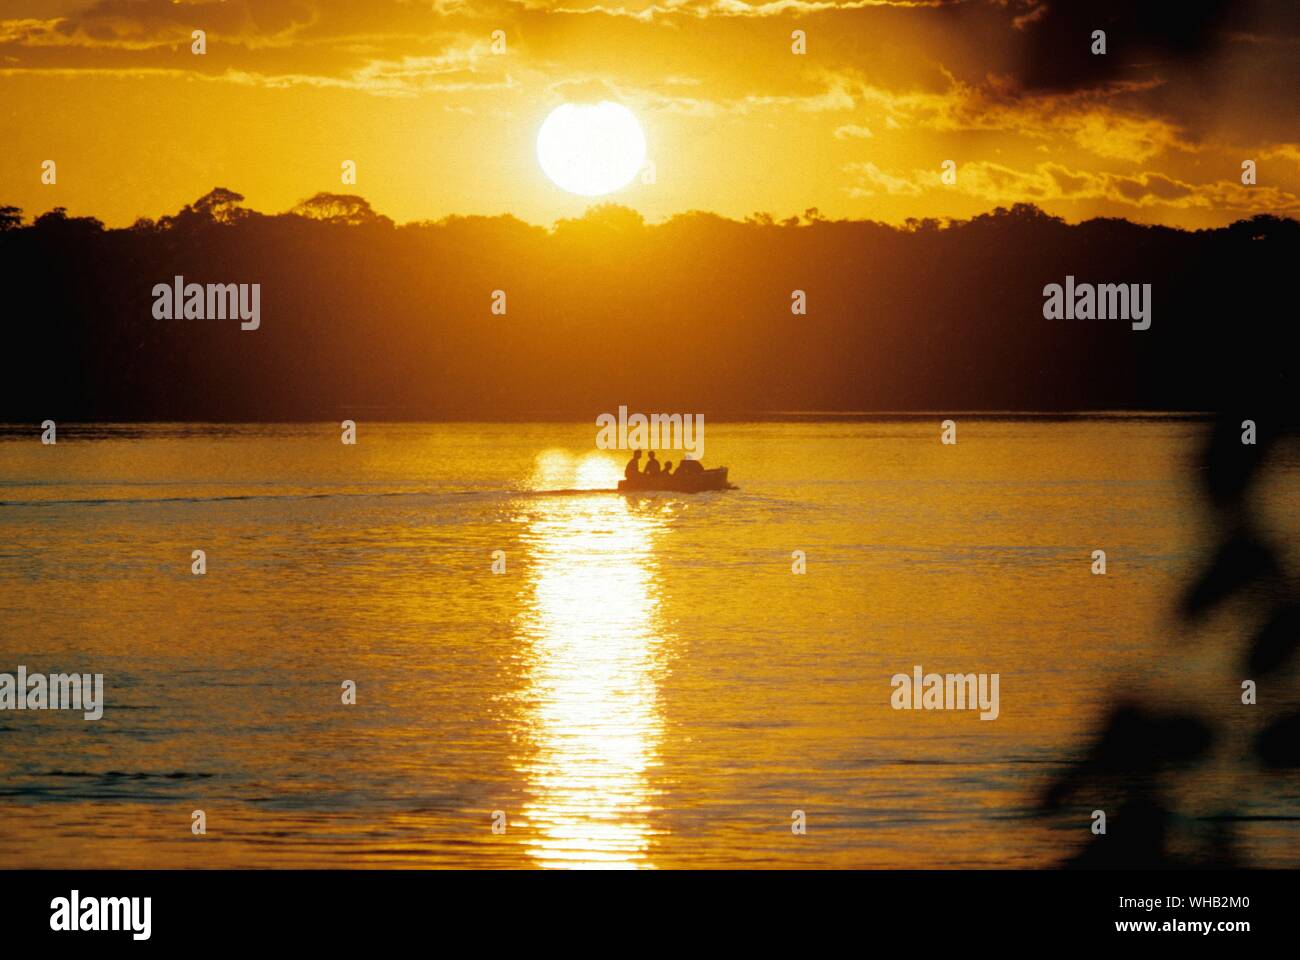 Brésil - coucher de soleil sur la zone sahélienne. Banque D'Images